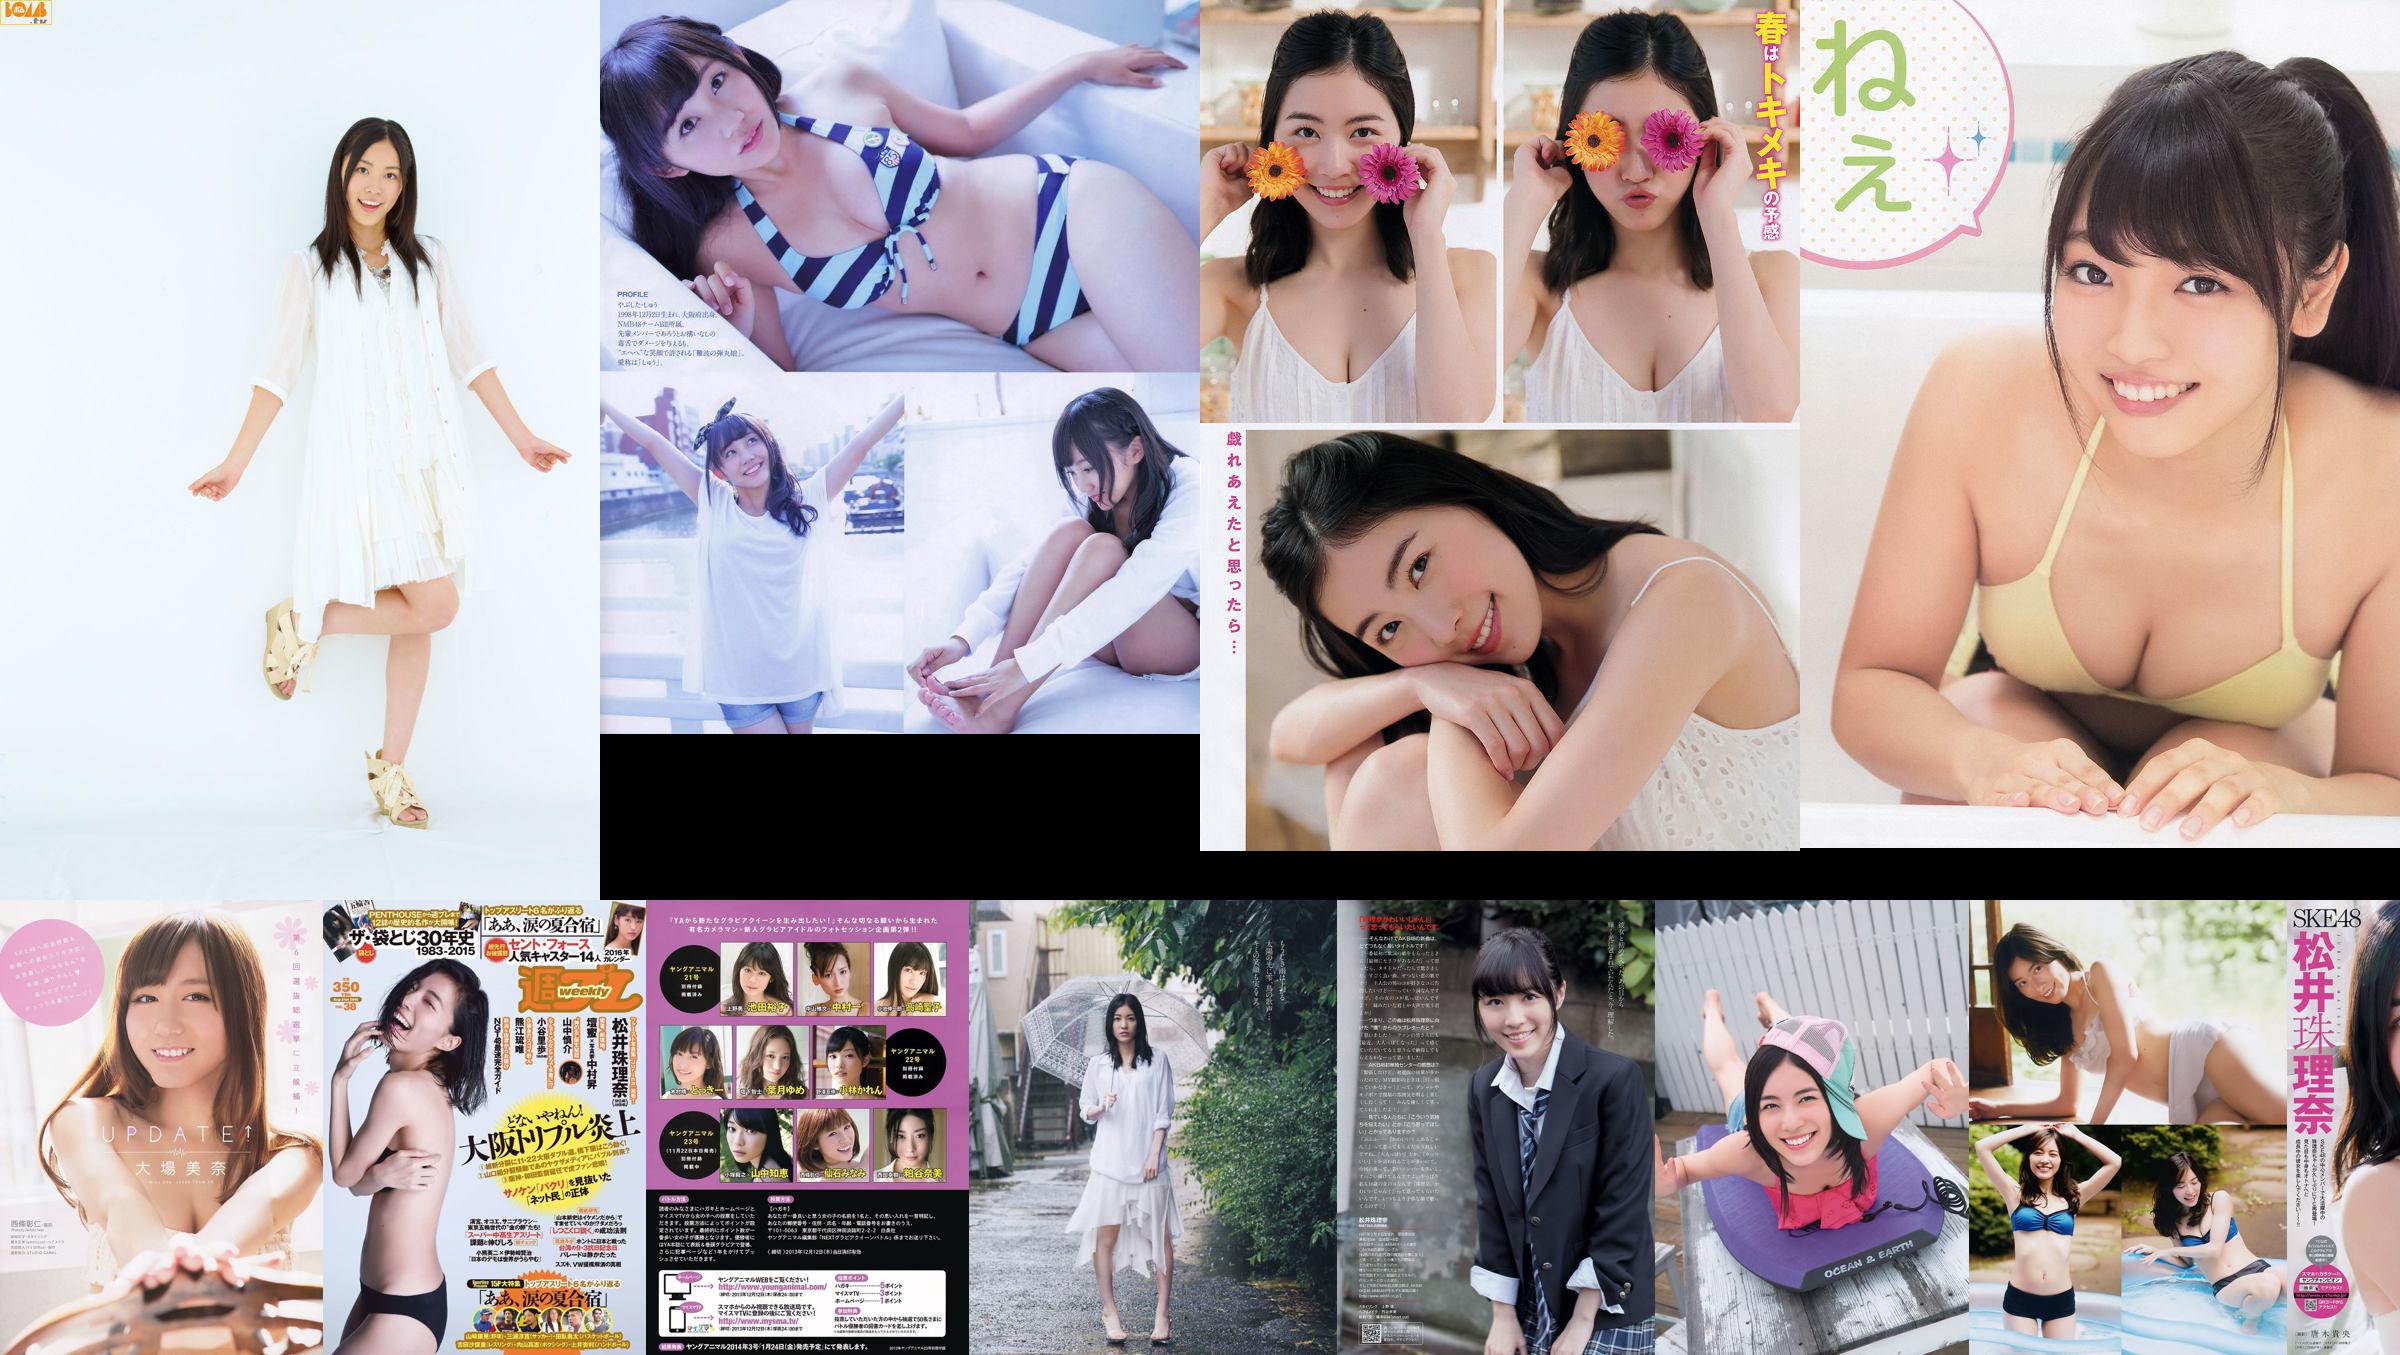 [Revista Bomba] 2014 No.07 Matsui Jurina Watanabe Miyuki Koshima Mako Iriyama Revista Princess Sato Photo No.b6917e Página 1